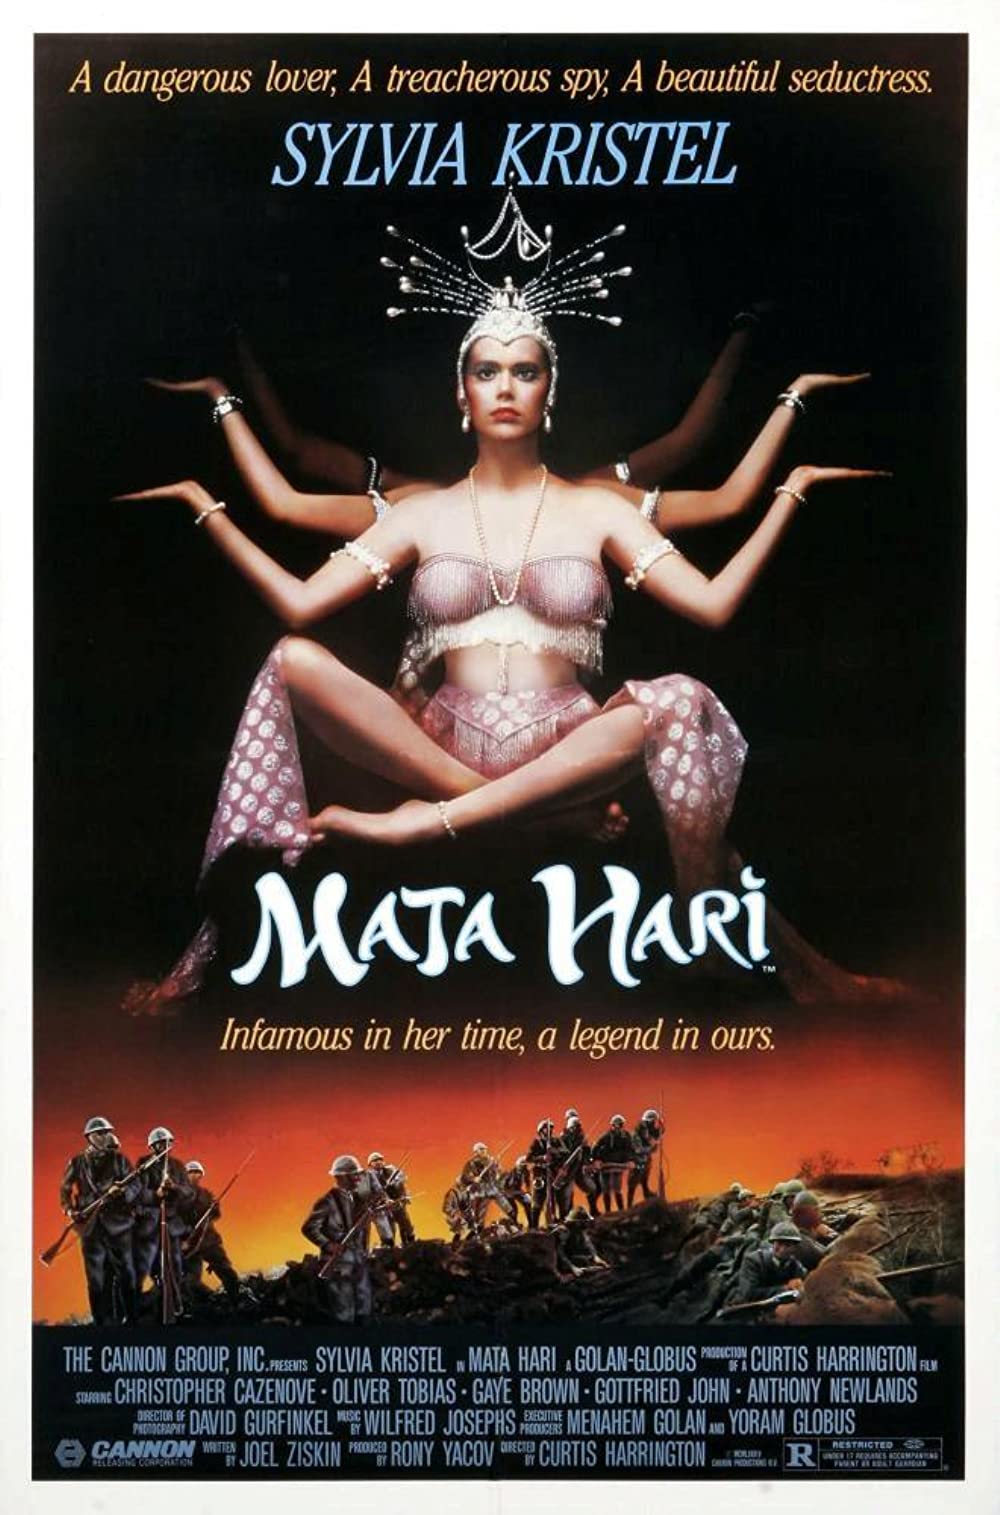 Filmbeschreibung zu Mata Hari